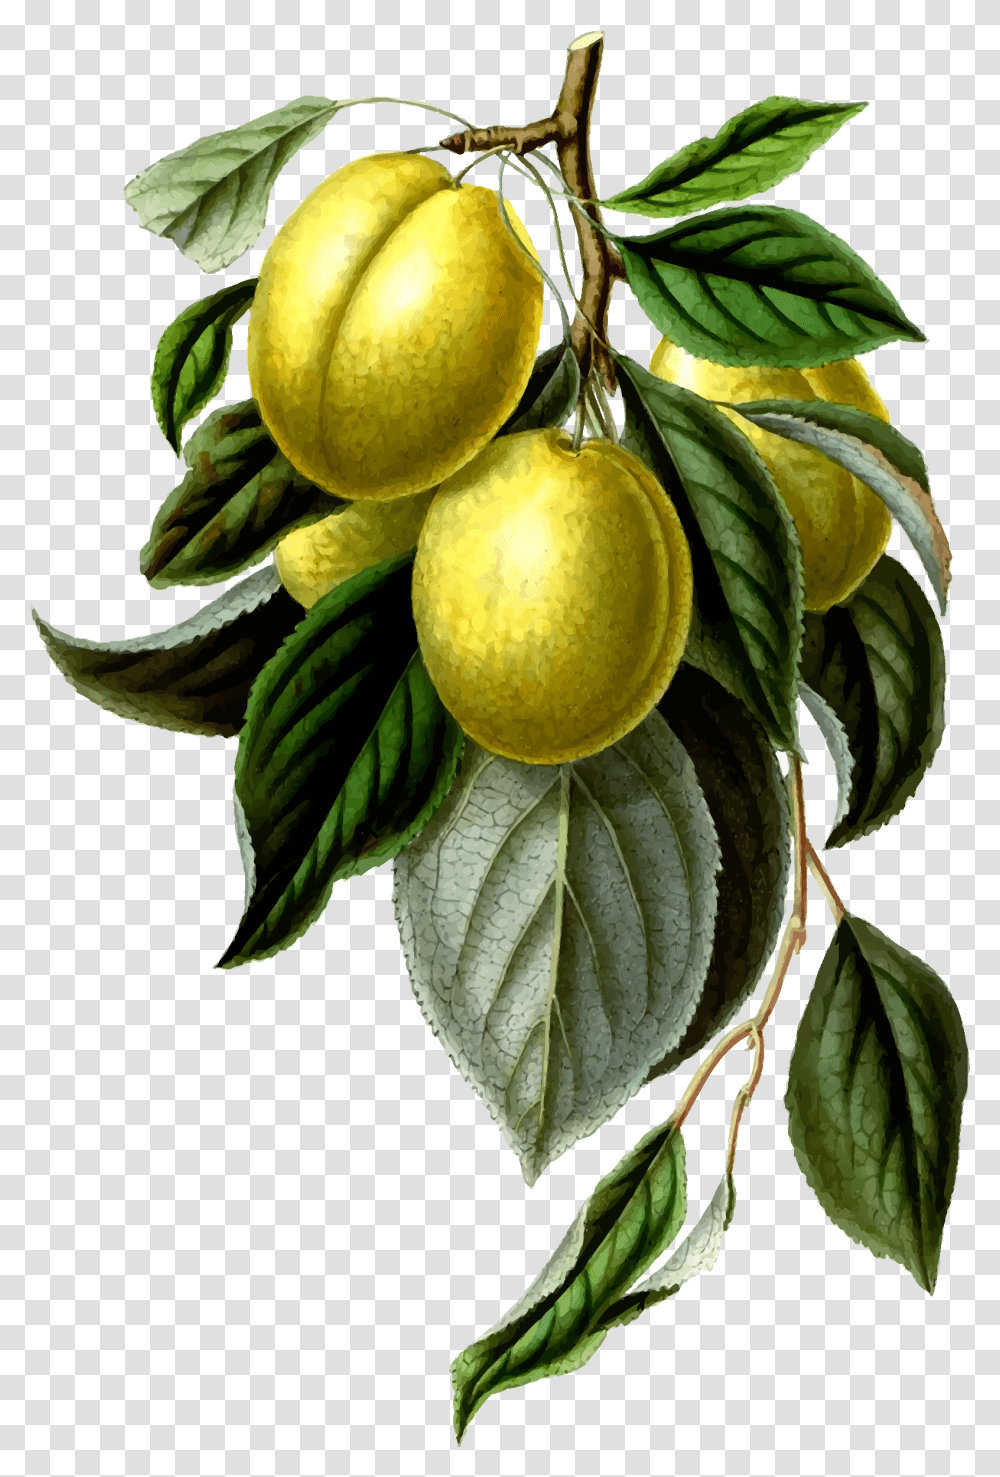 This Free Icons Design Of Golden Esperen Plum Lemon Vintage, Plant, Food, Fruit, Produce Transparent Png